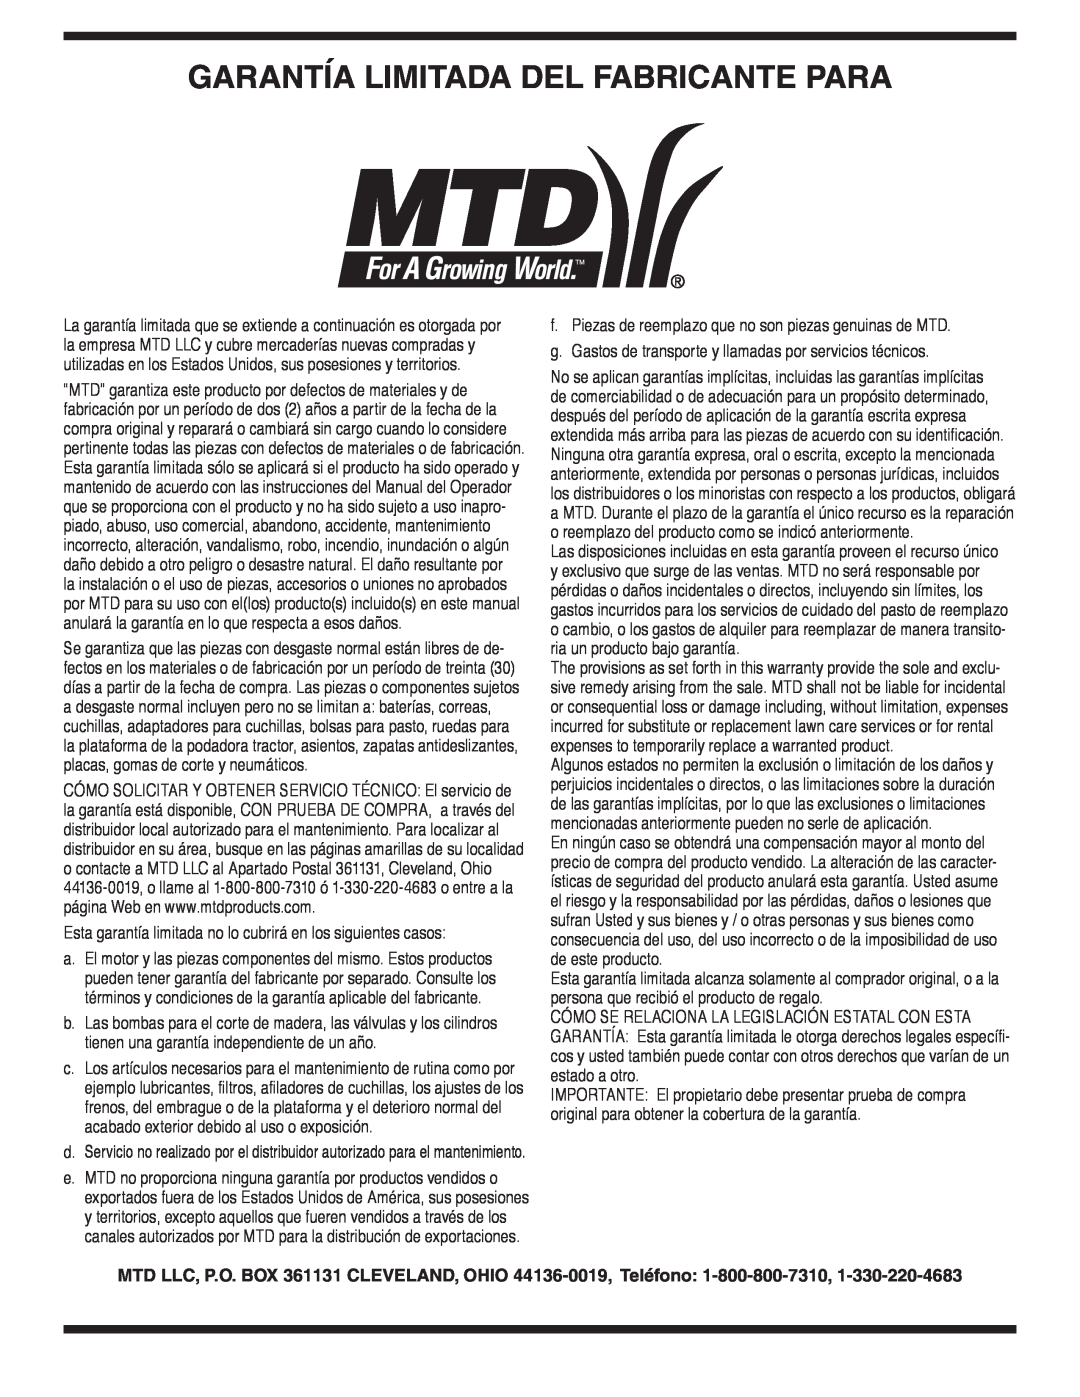 MTD OHD 190-180 Garantía Limitada Del Fabricante Para, Esta garantía limitada no lo cubrirá en los siguientes casos 